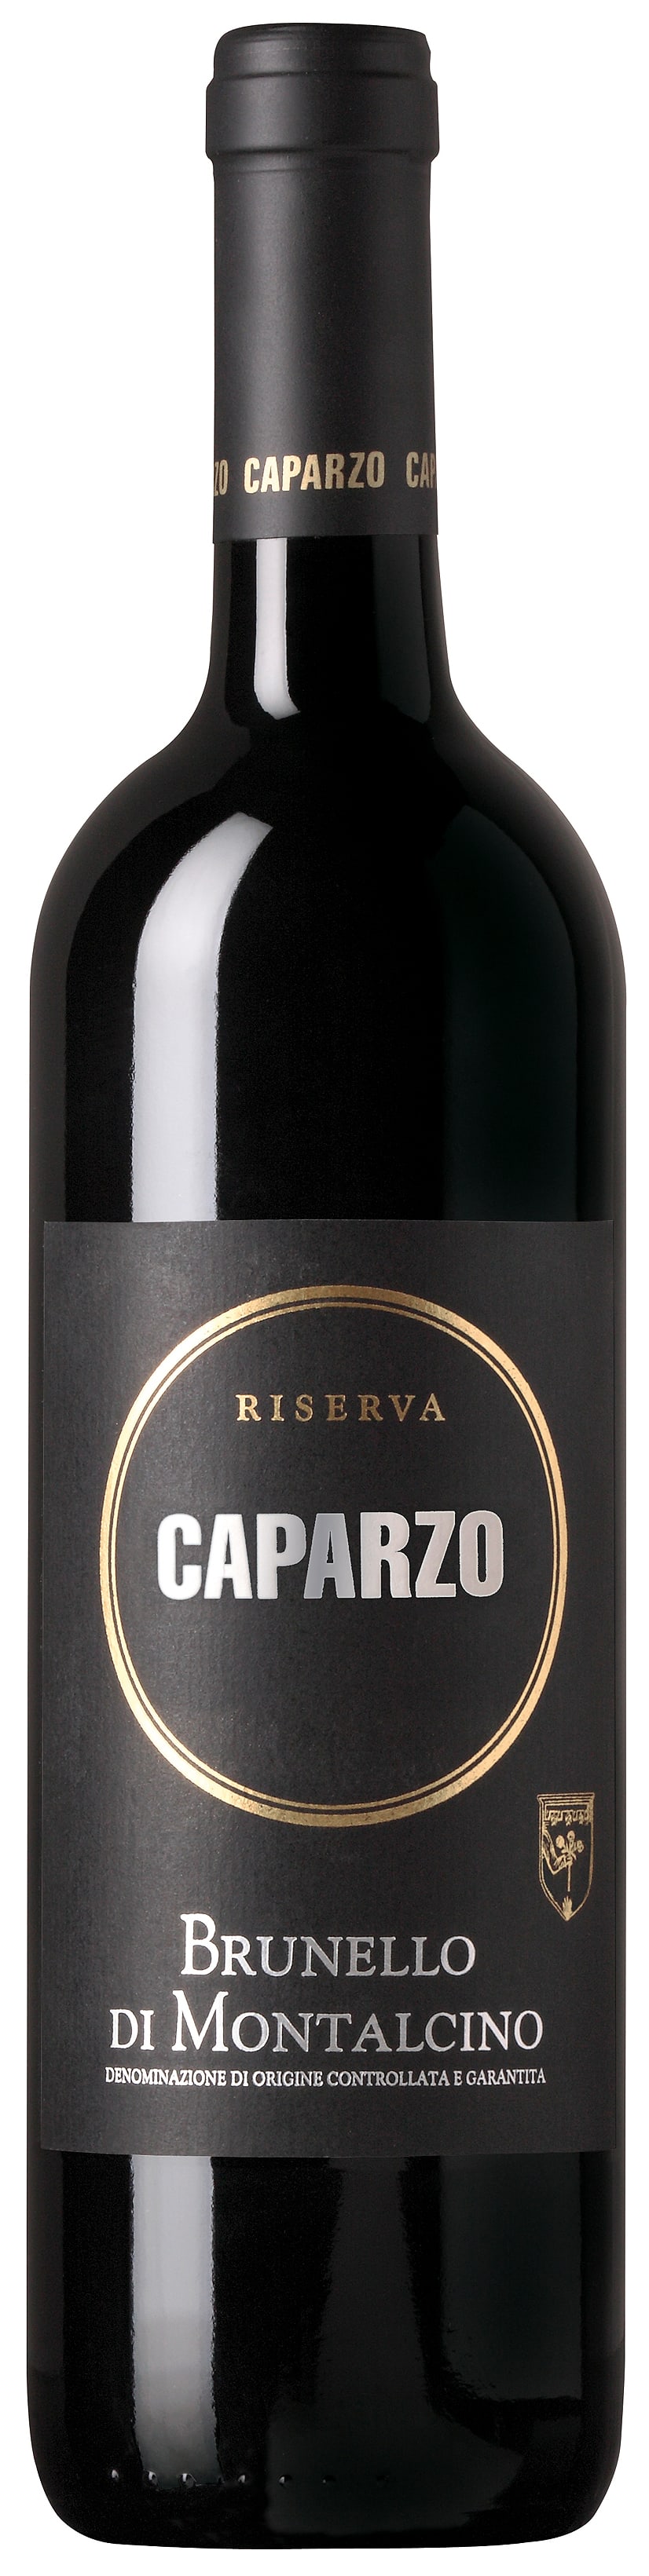 Caparzo - Brunello di Montalcino Riserva 2015 (750)